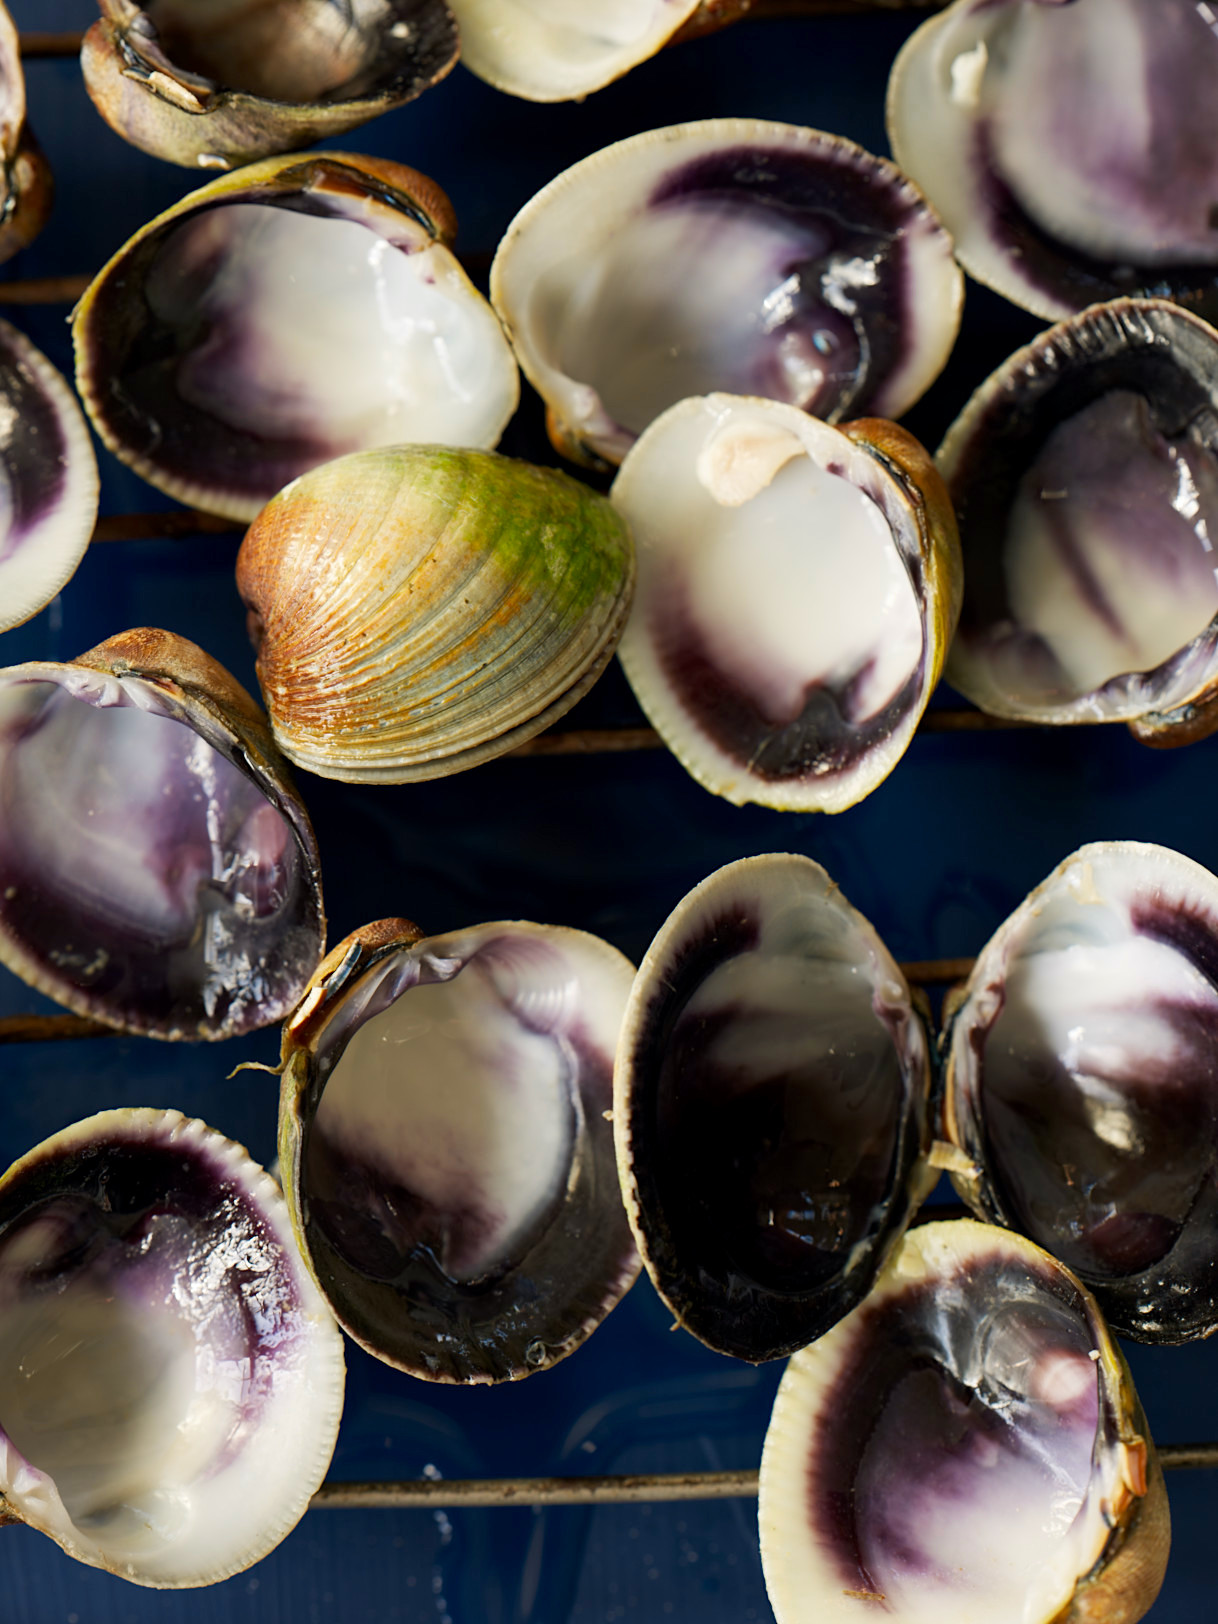 Crunchy Baked Clams|NZ littleneck clams